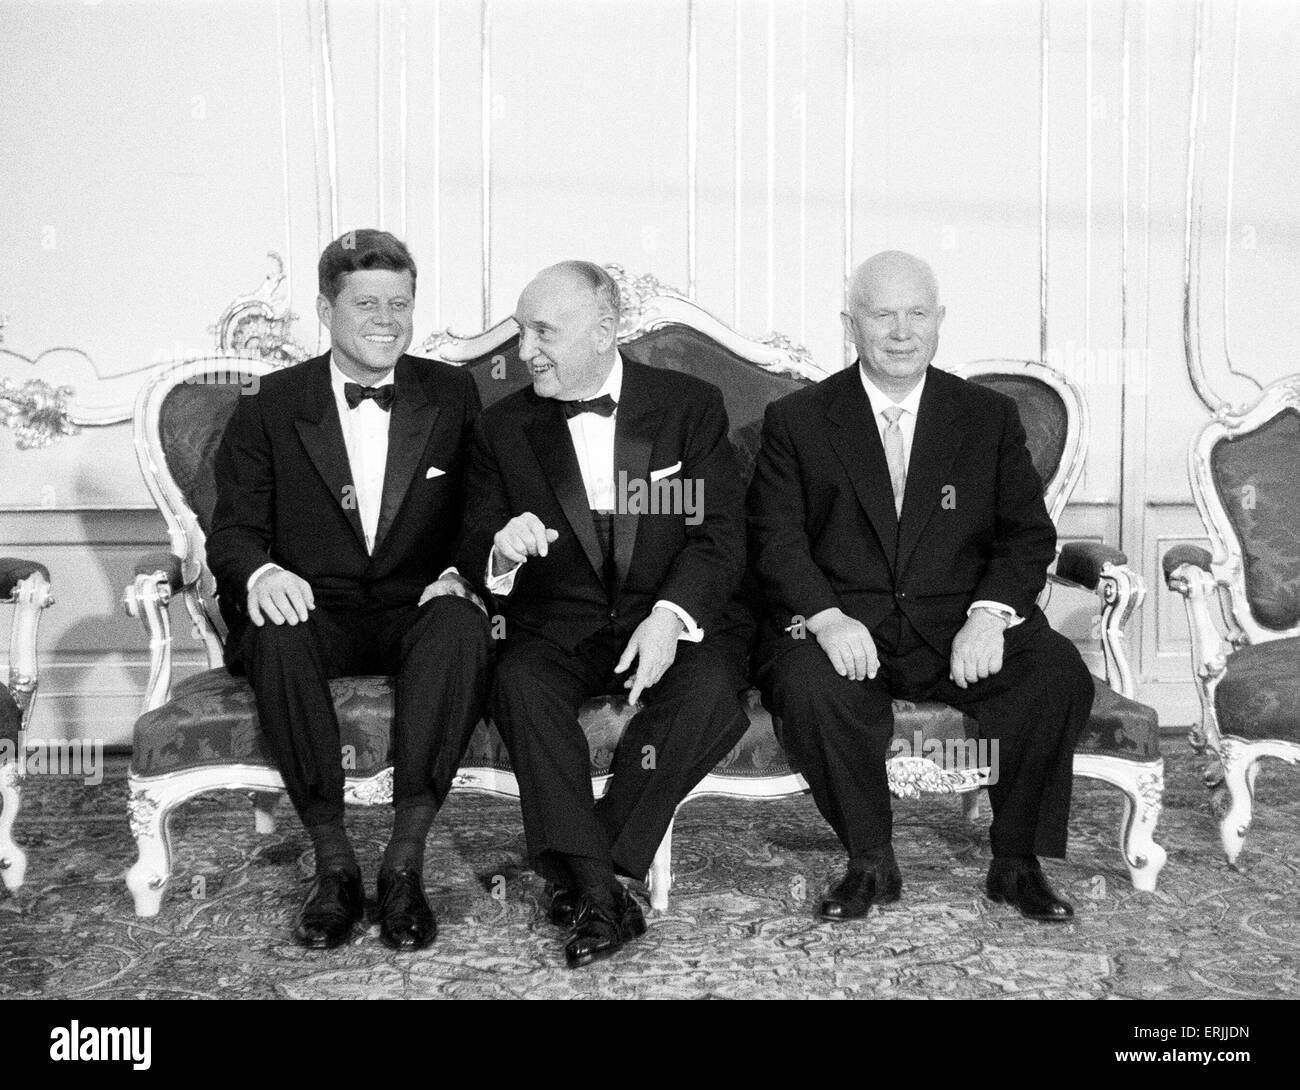 La visite du président américain John F. Kennedy à Vienne, Autriche pour des entretiens avec le Premier Ministre soviétique Nikita Khrouchtchev. Les deux dirigeants John F Kennedy et Nikita Khrouchtchev séparées par le président autrichien Adolf Scharf. 3e juin 1961. Banque D'Images